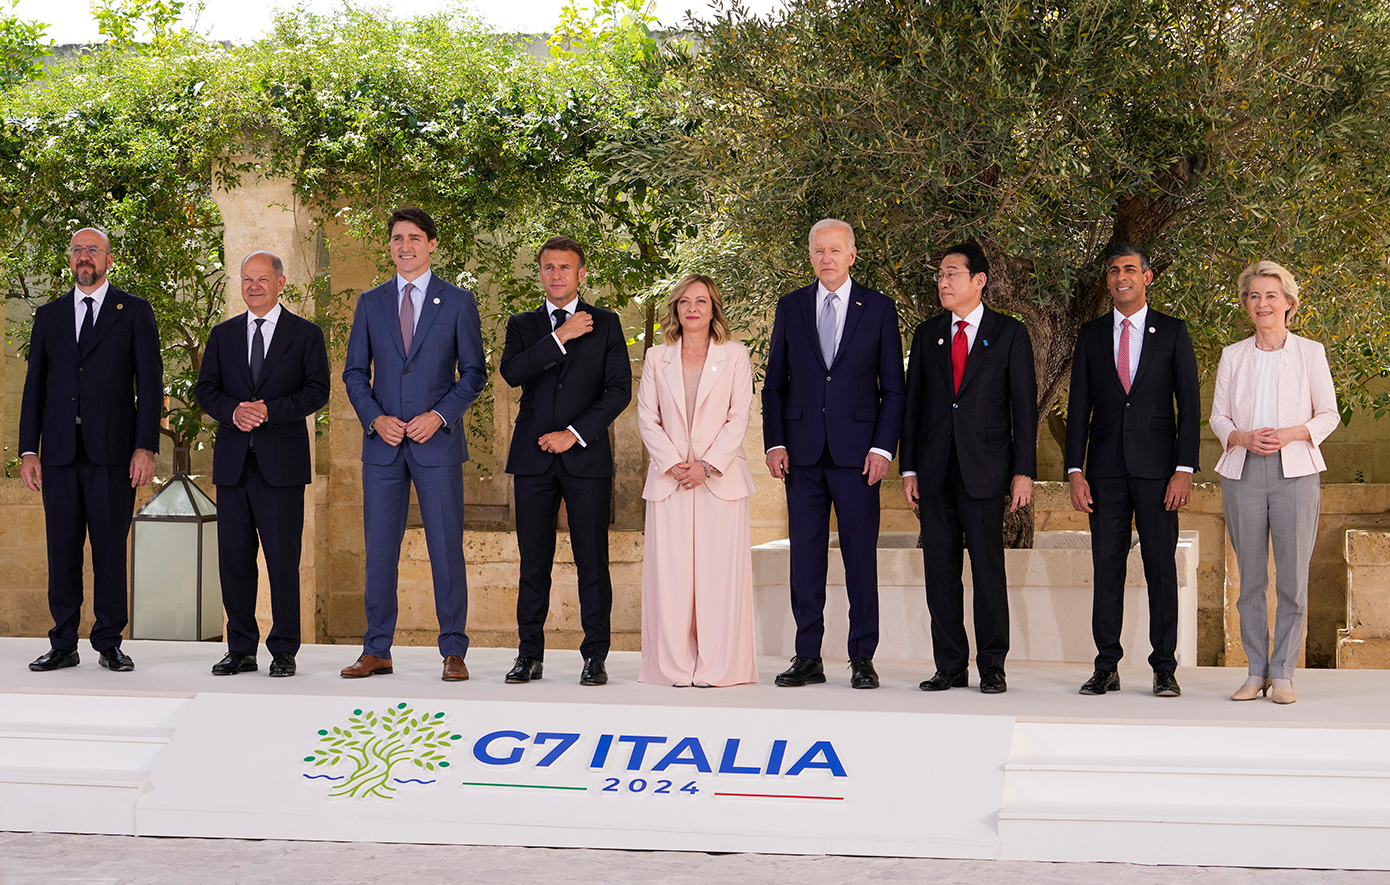 Αγκαλιές, χαμόγελα και selfie – Το φωτογραφικό άλμπουμ από τη Σύνοδο της G7